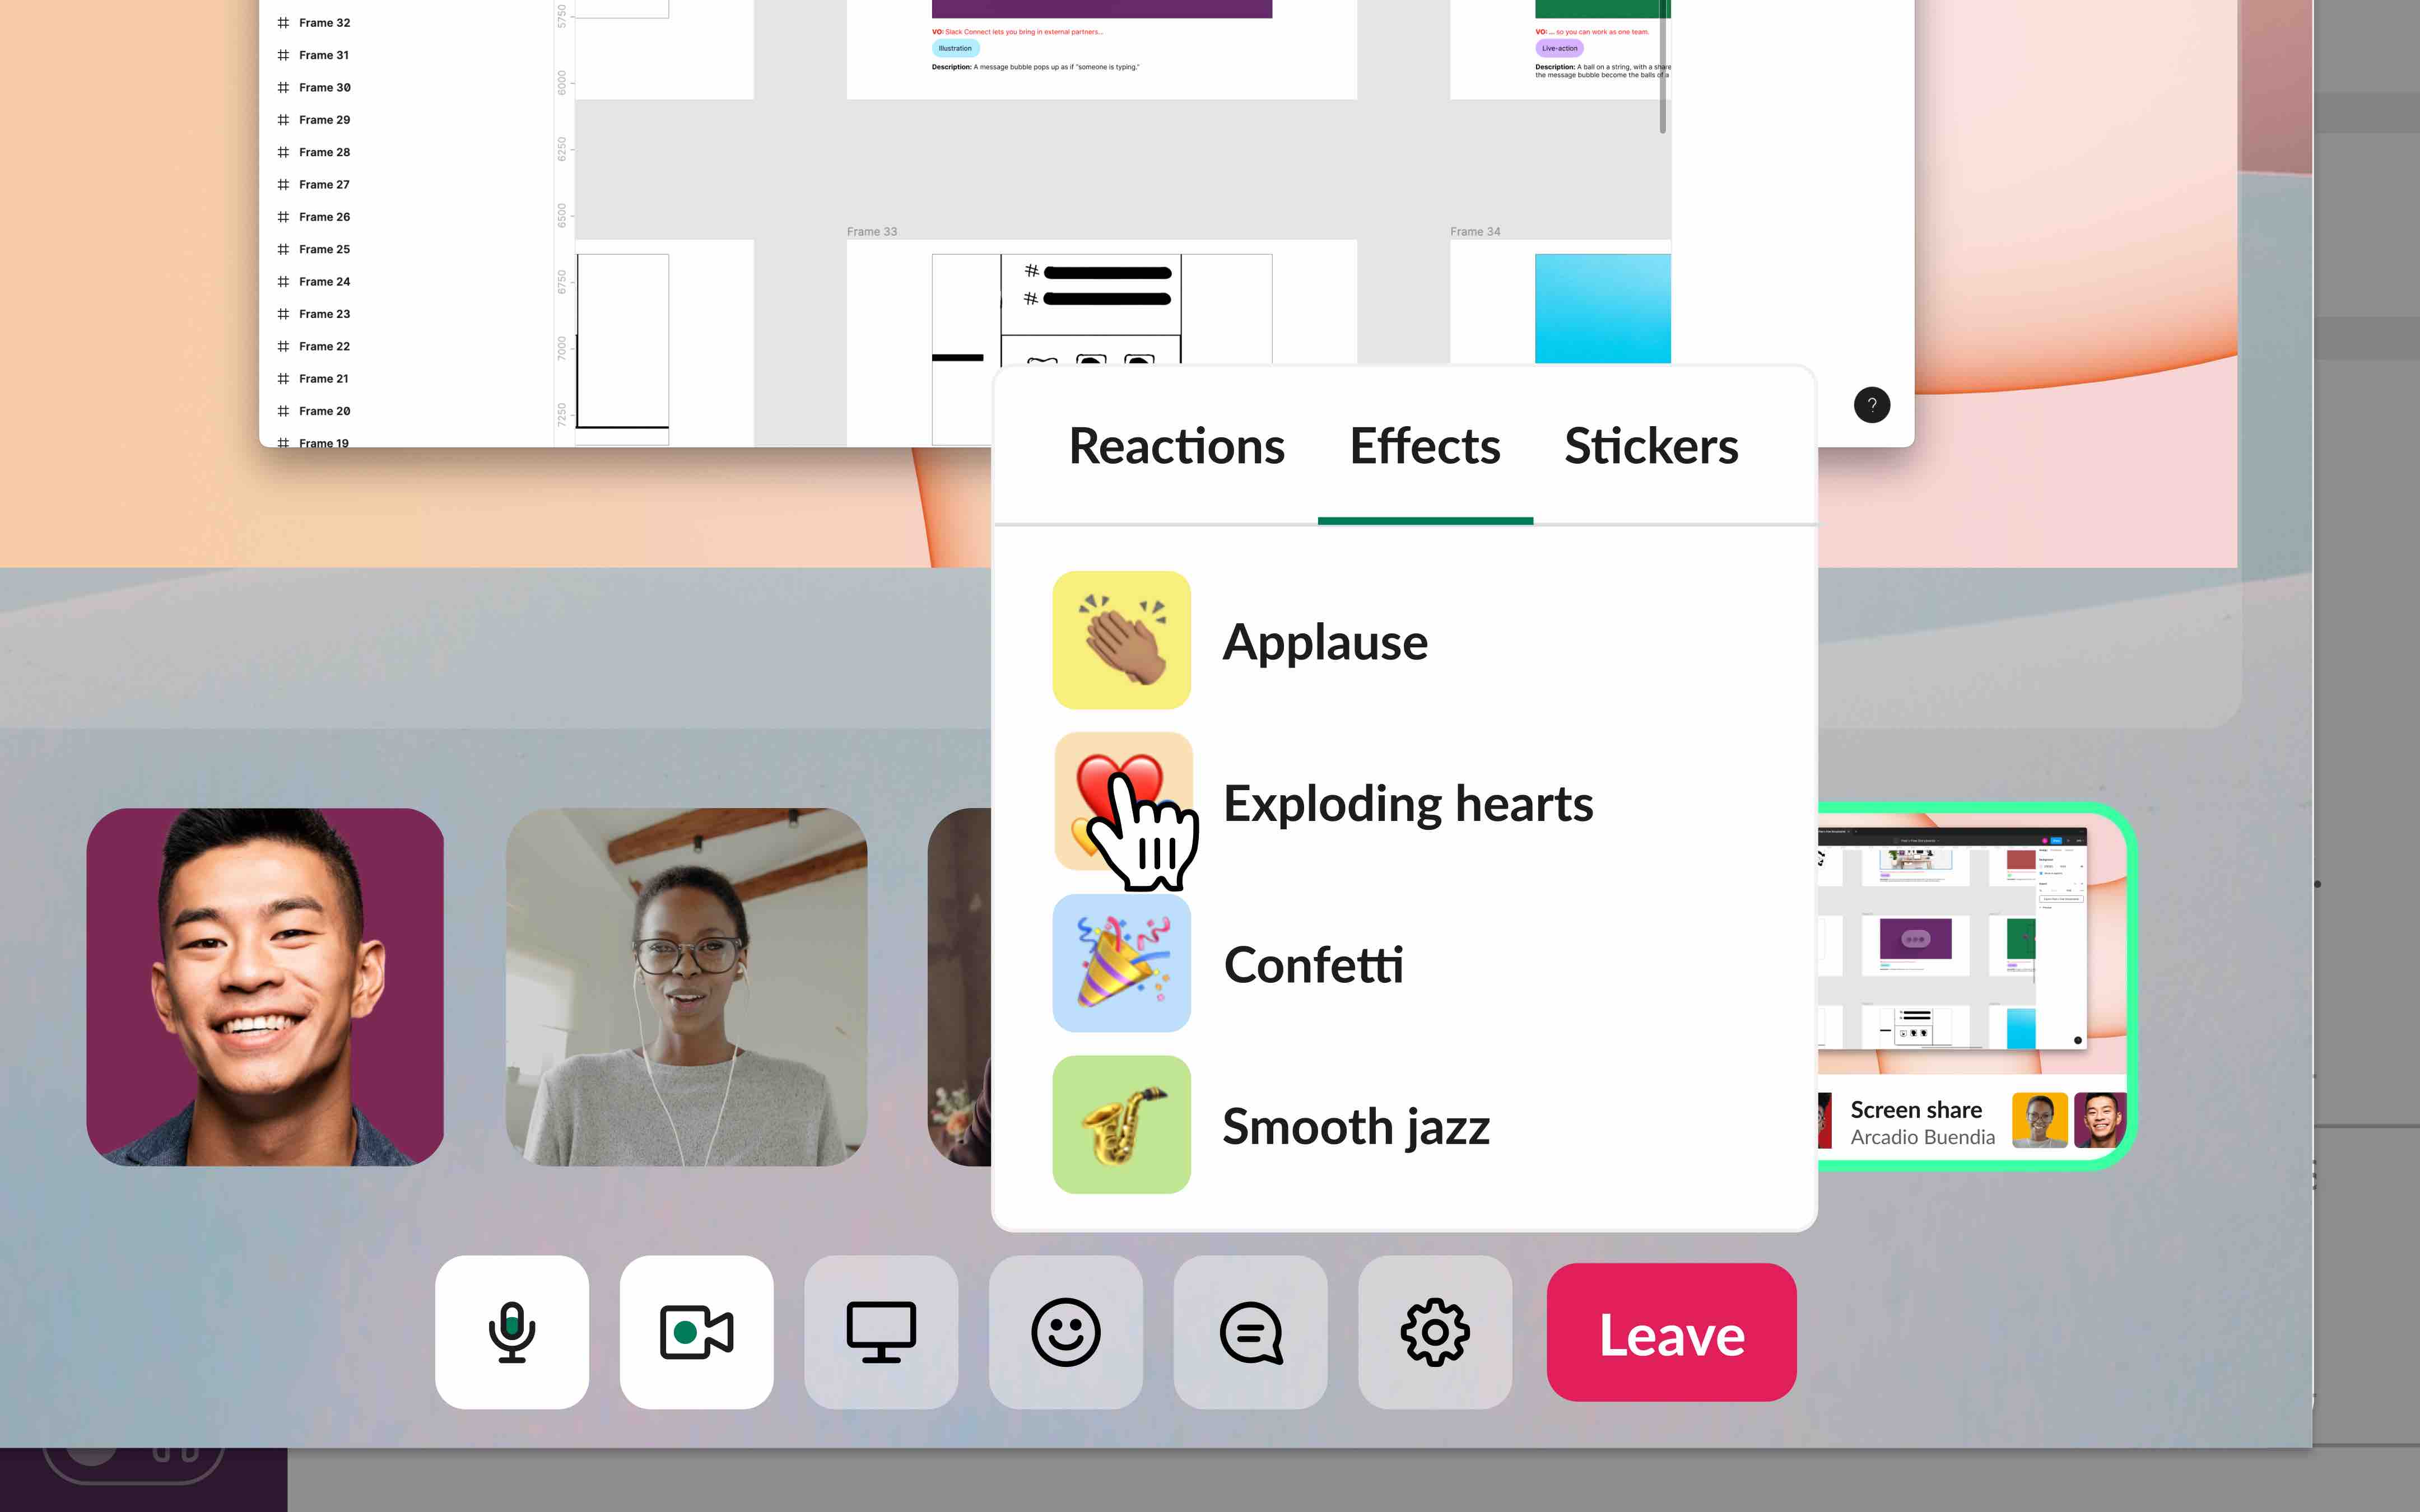 Slack Huddles được nâng cấp với tính năng video và chia sẻ màn hình mới được hoàn thiện. Điều này giúp cho các cuộc họp trực tuyến của bạn dễ dàng và hiệu quả hơn bao giờ hết. Hãy xem video liên quan để tận hưởng những lợi ích của Slack Huddles.